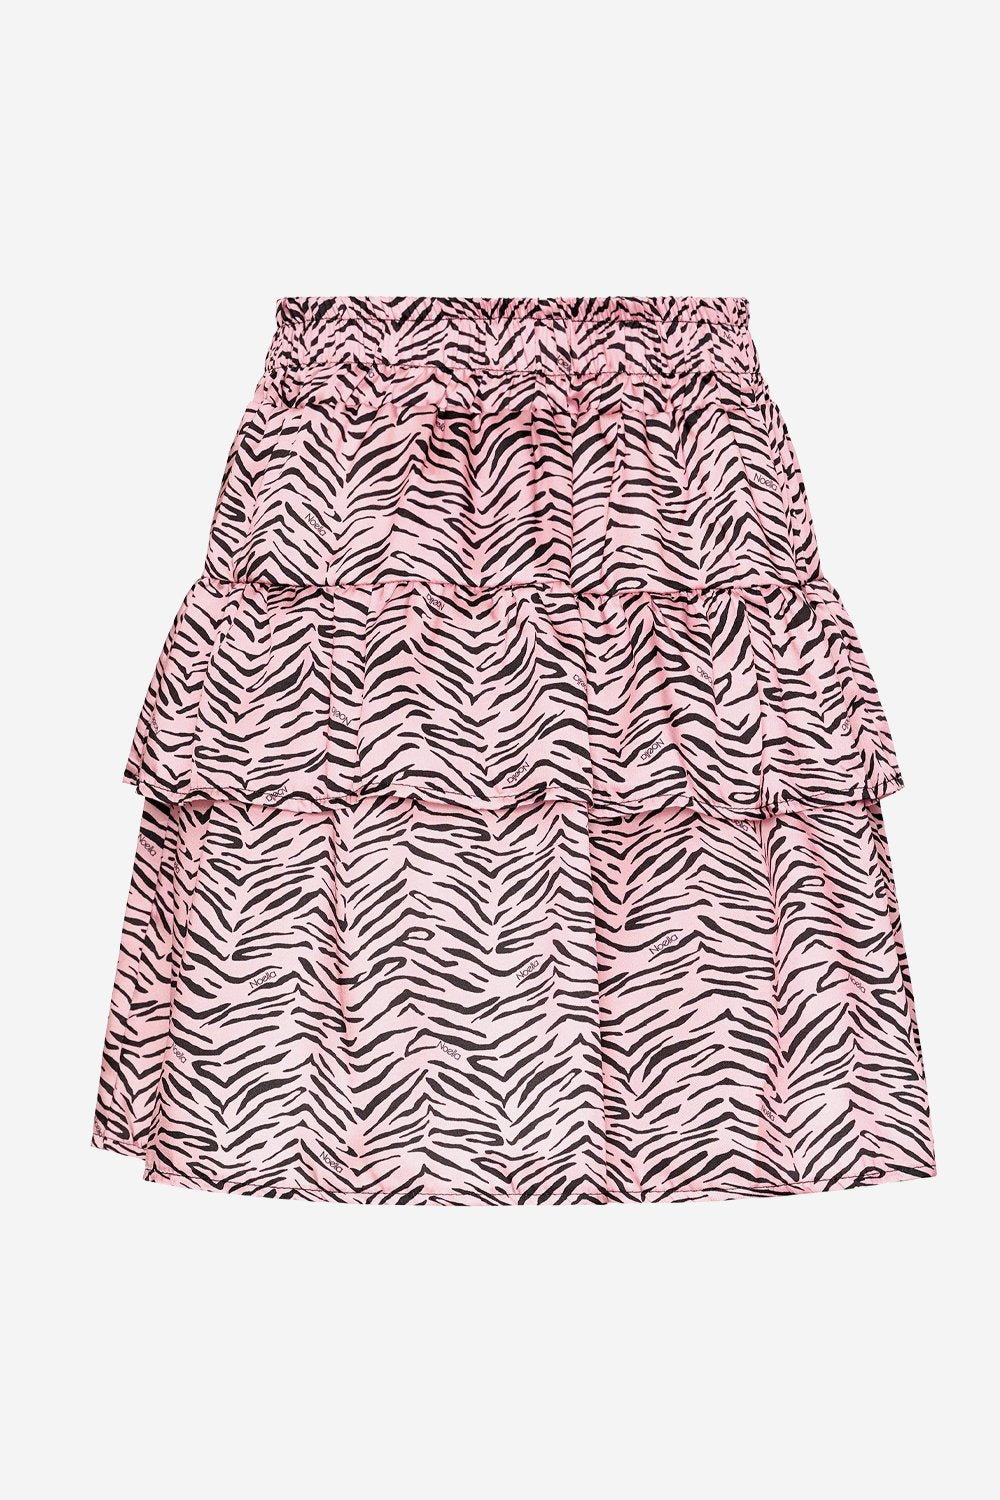 Zues Skirt Light Pink